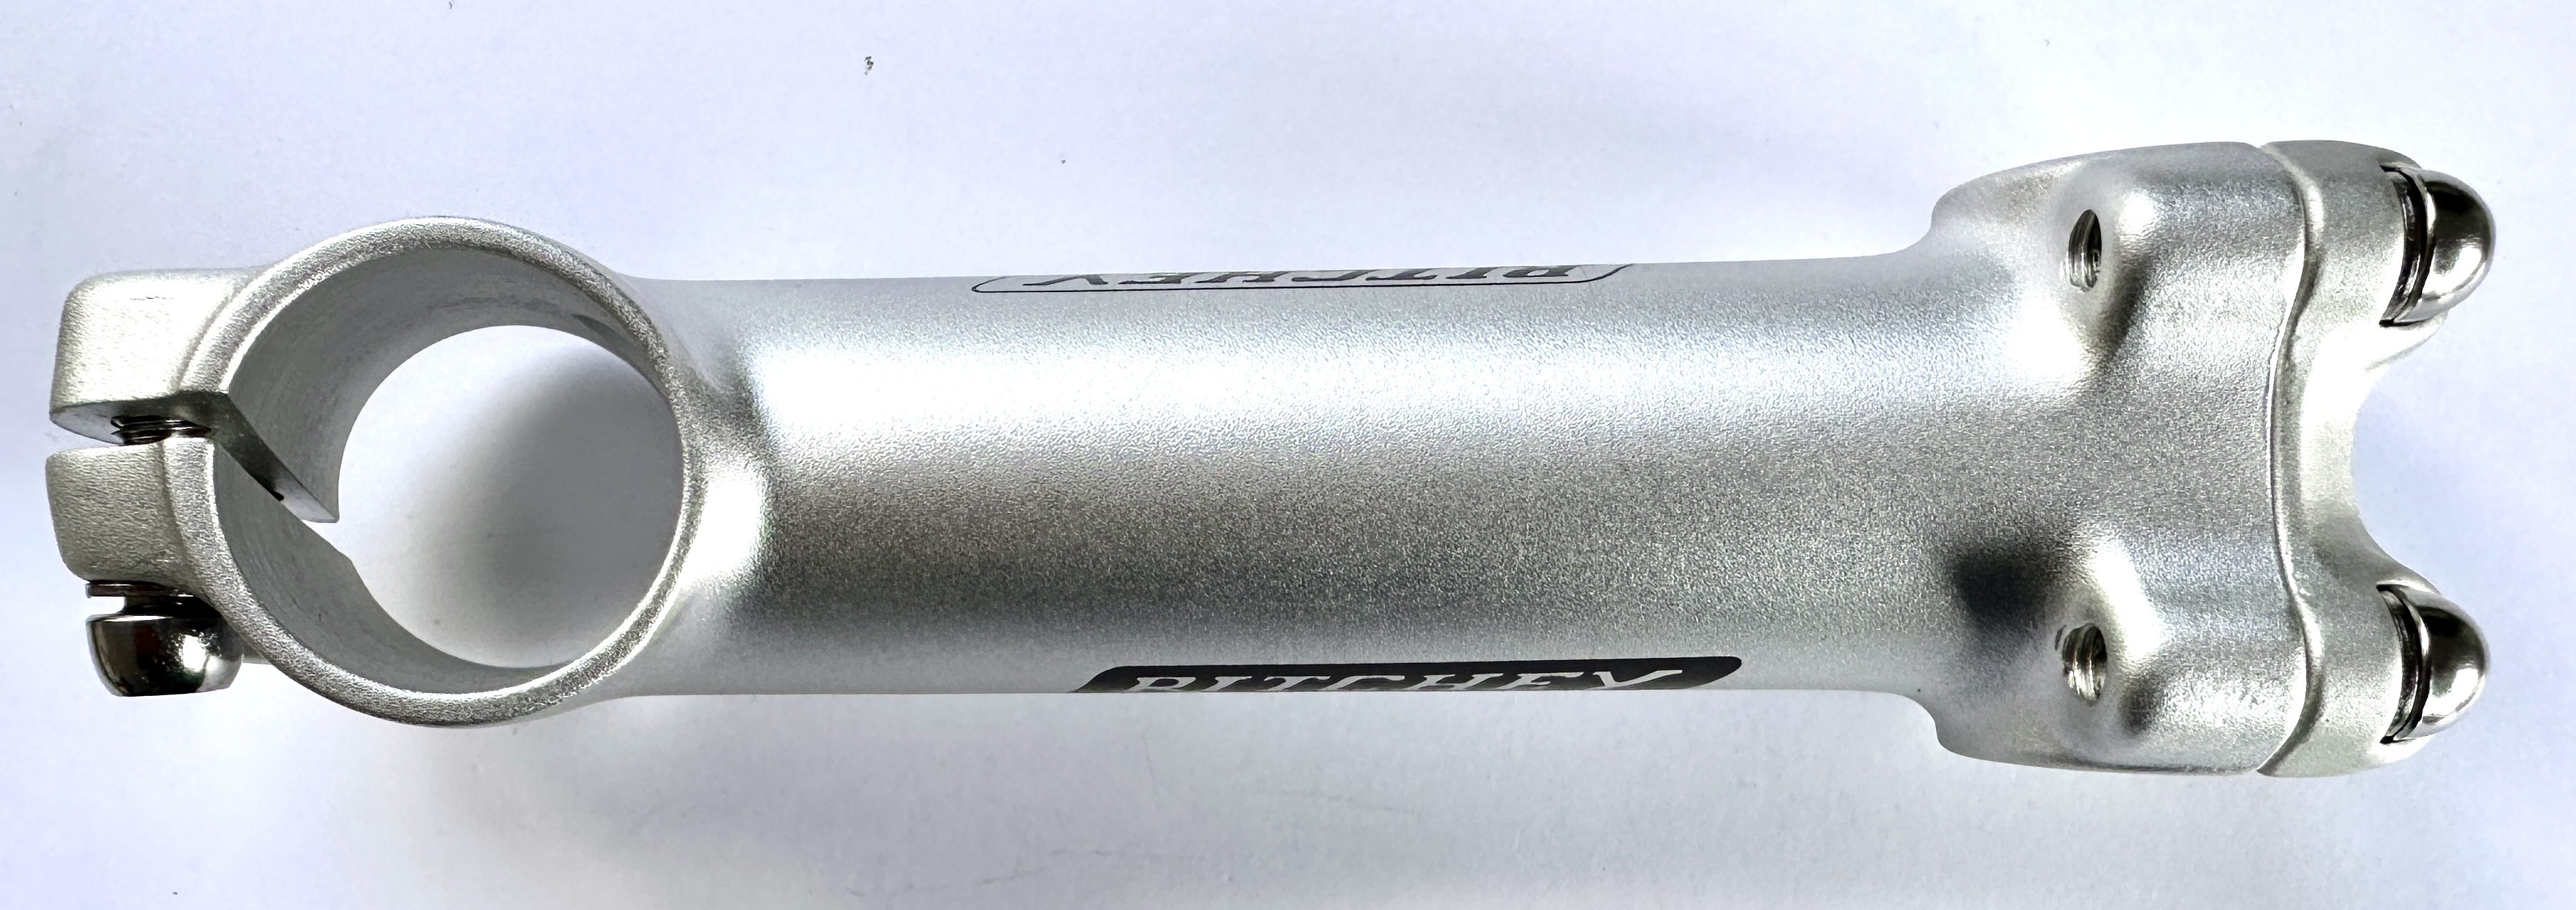  Ritchey Pro Attacco manubrio in alluminio: 1 1/8 attacco manubrio 1 pollice attacco a vite a 4 vie